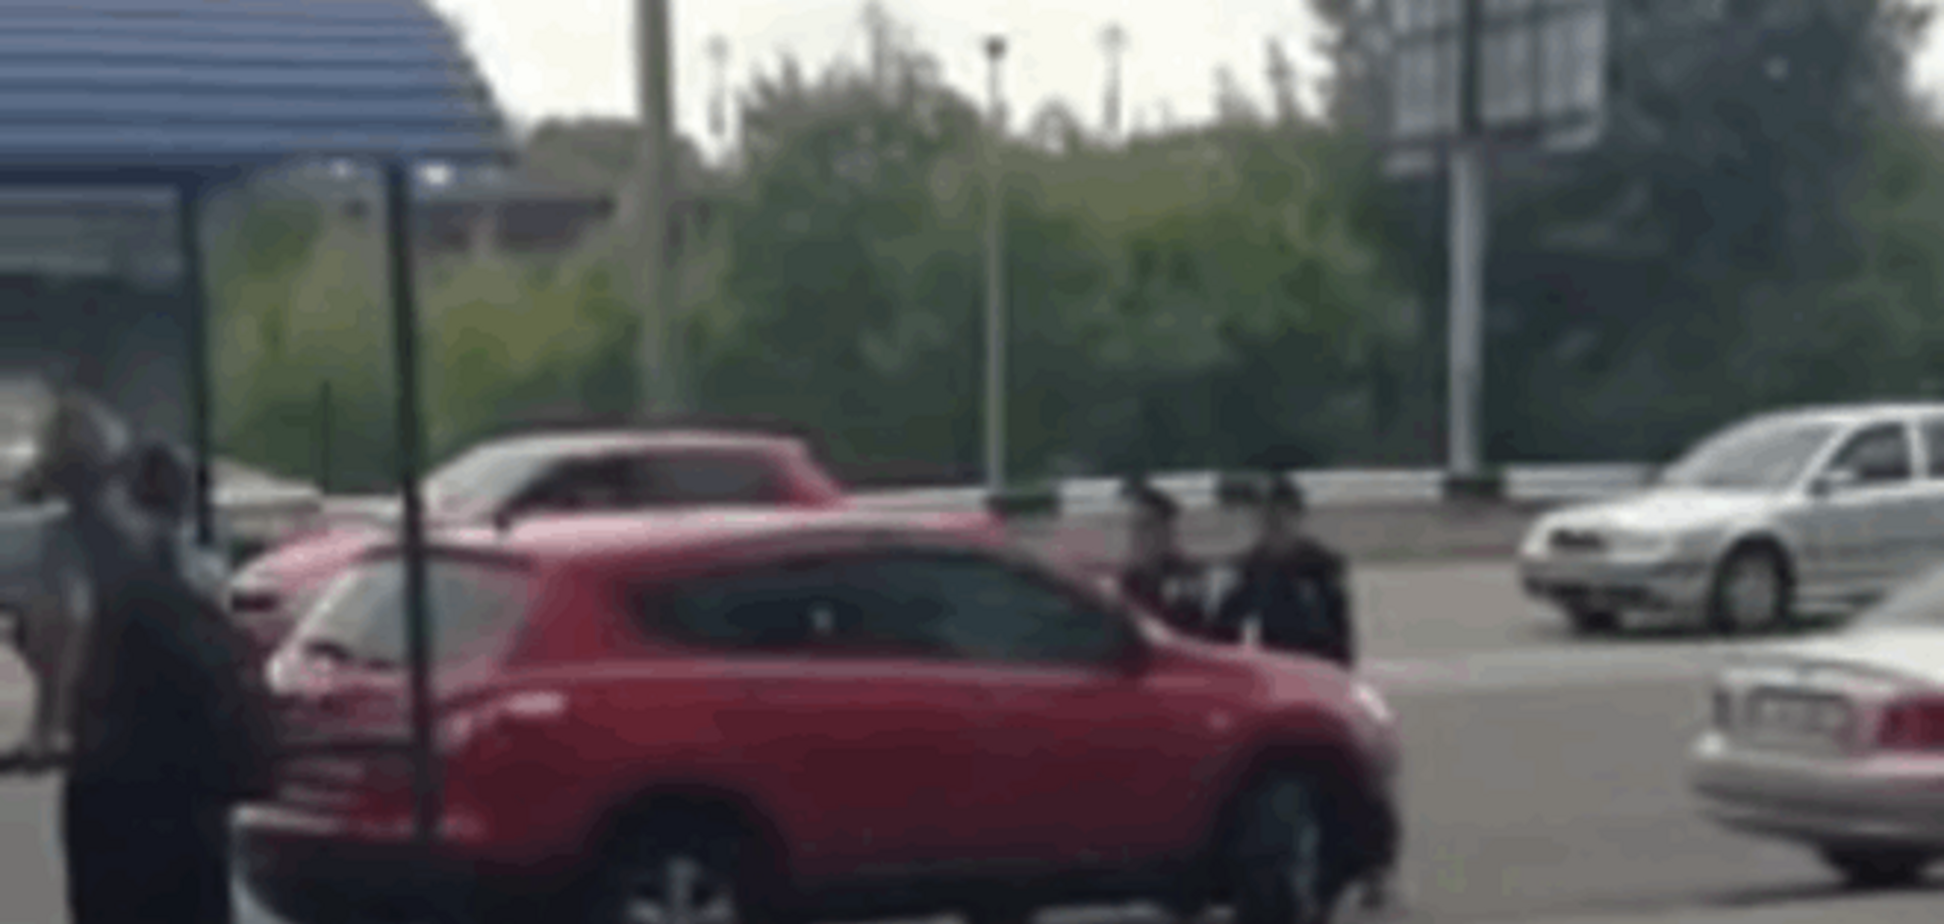 Київські поліцейські пов'язали блондинку, яка намагалася збити їх на джипі: опубліковано відео